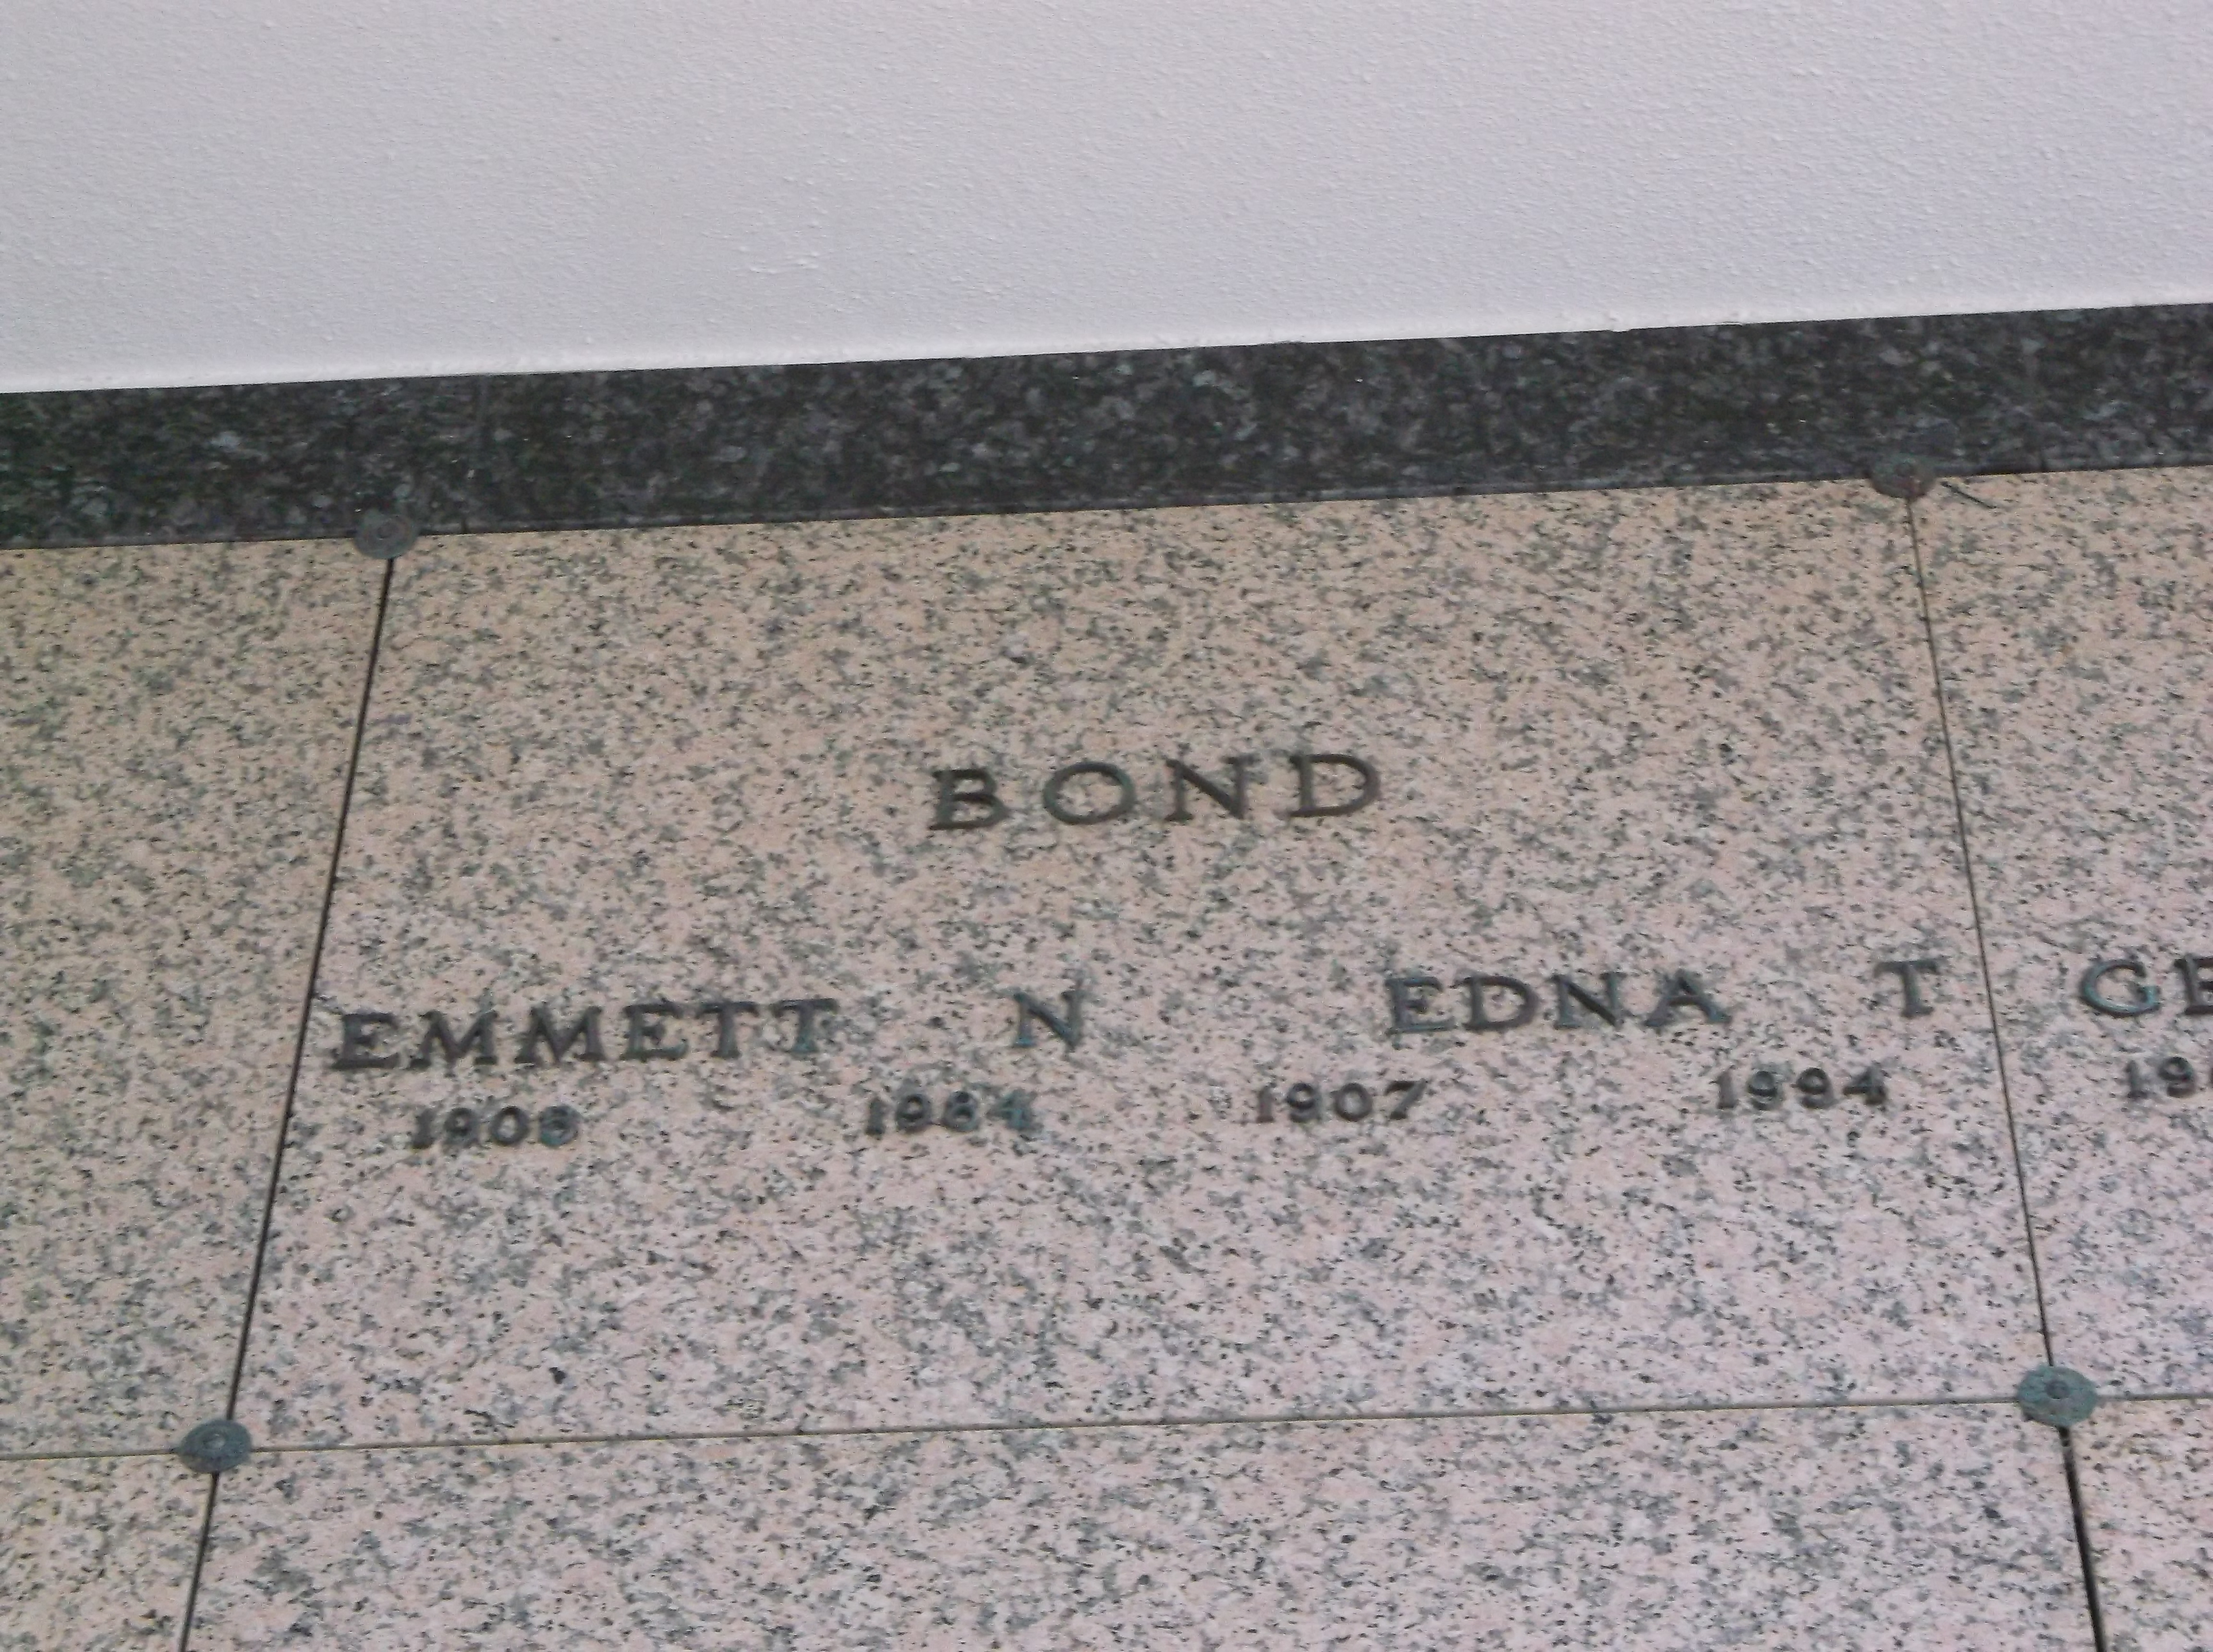 Emmett N Bond